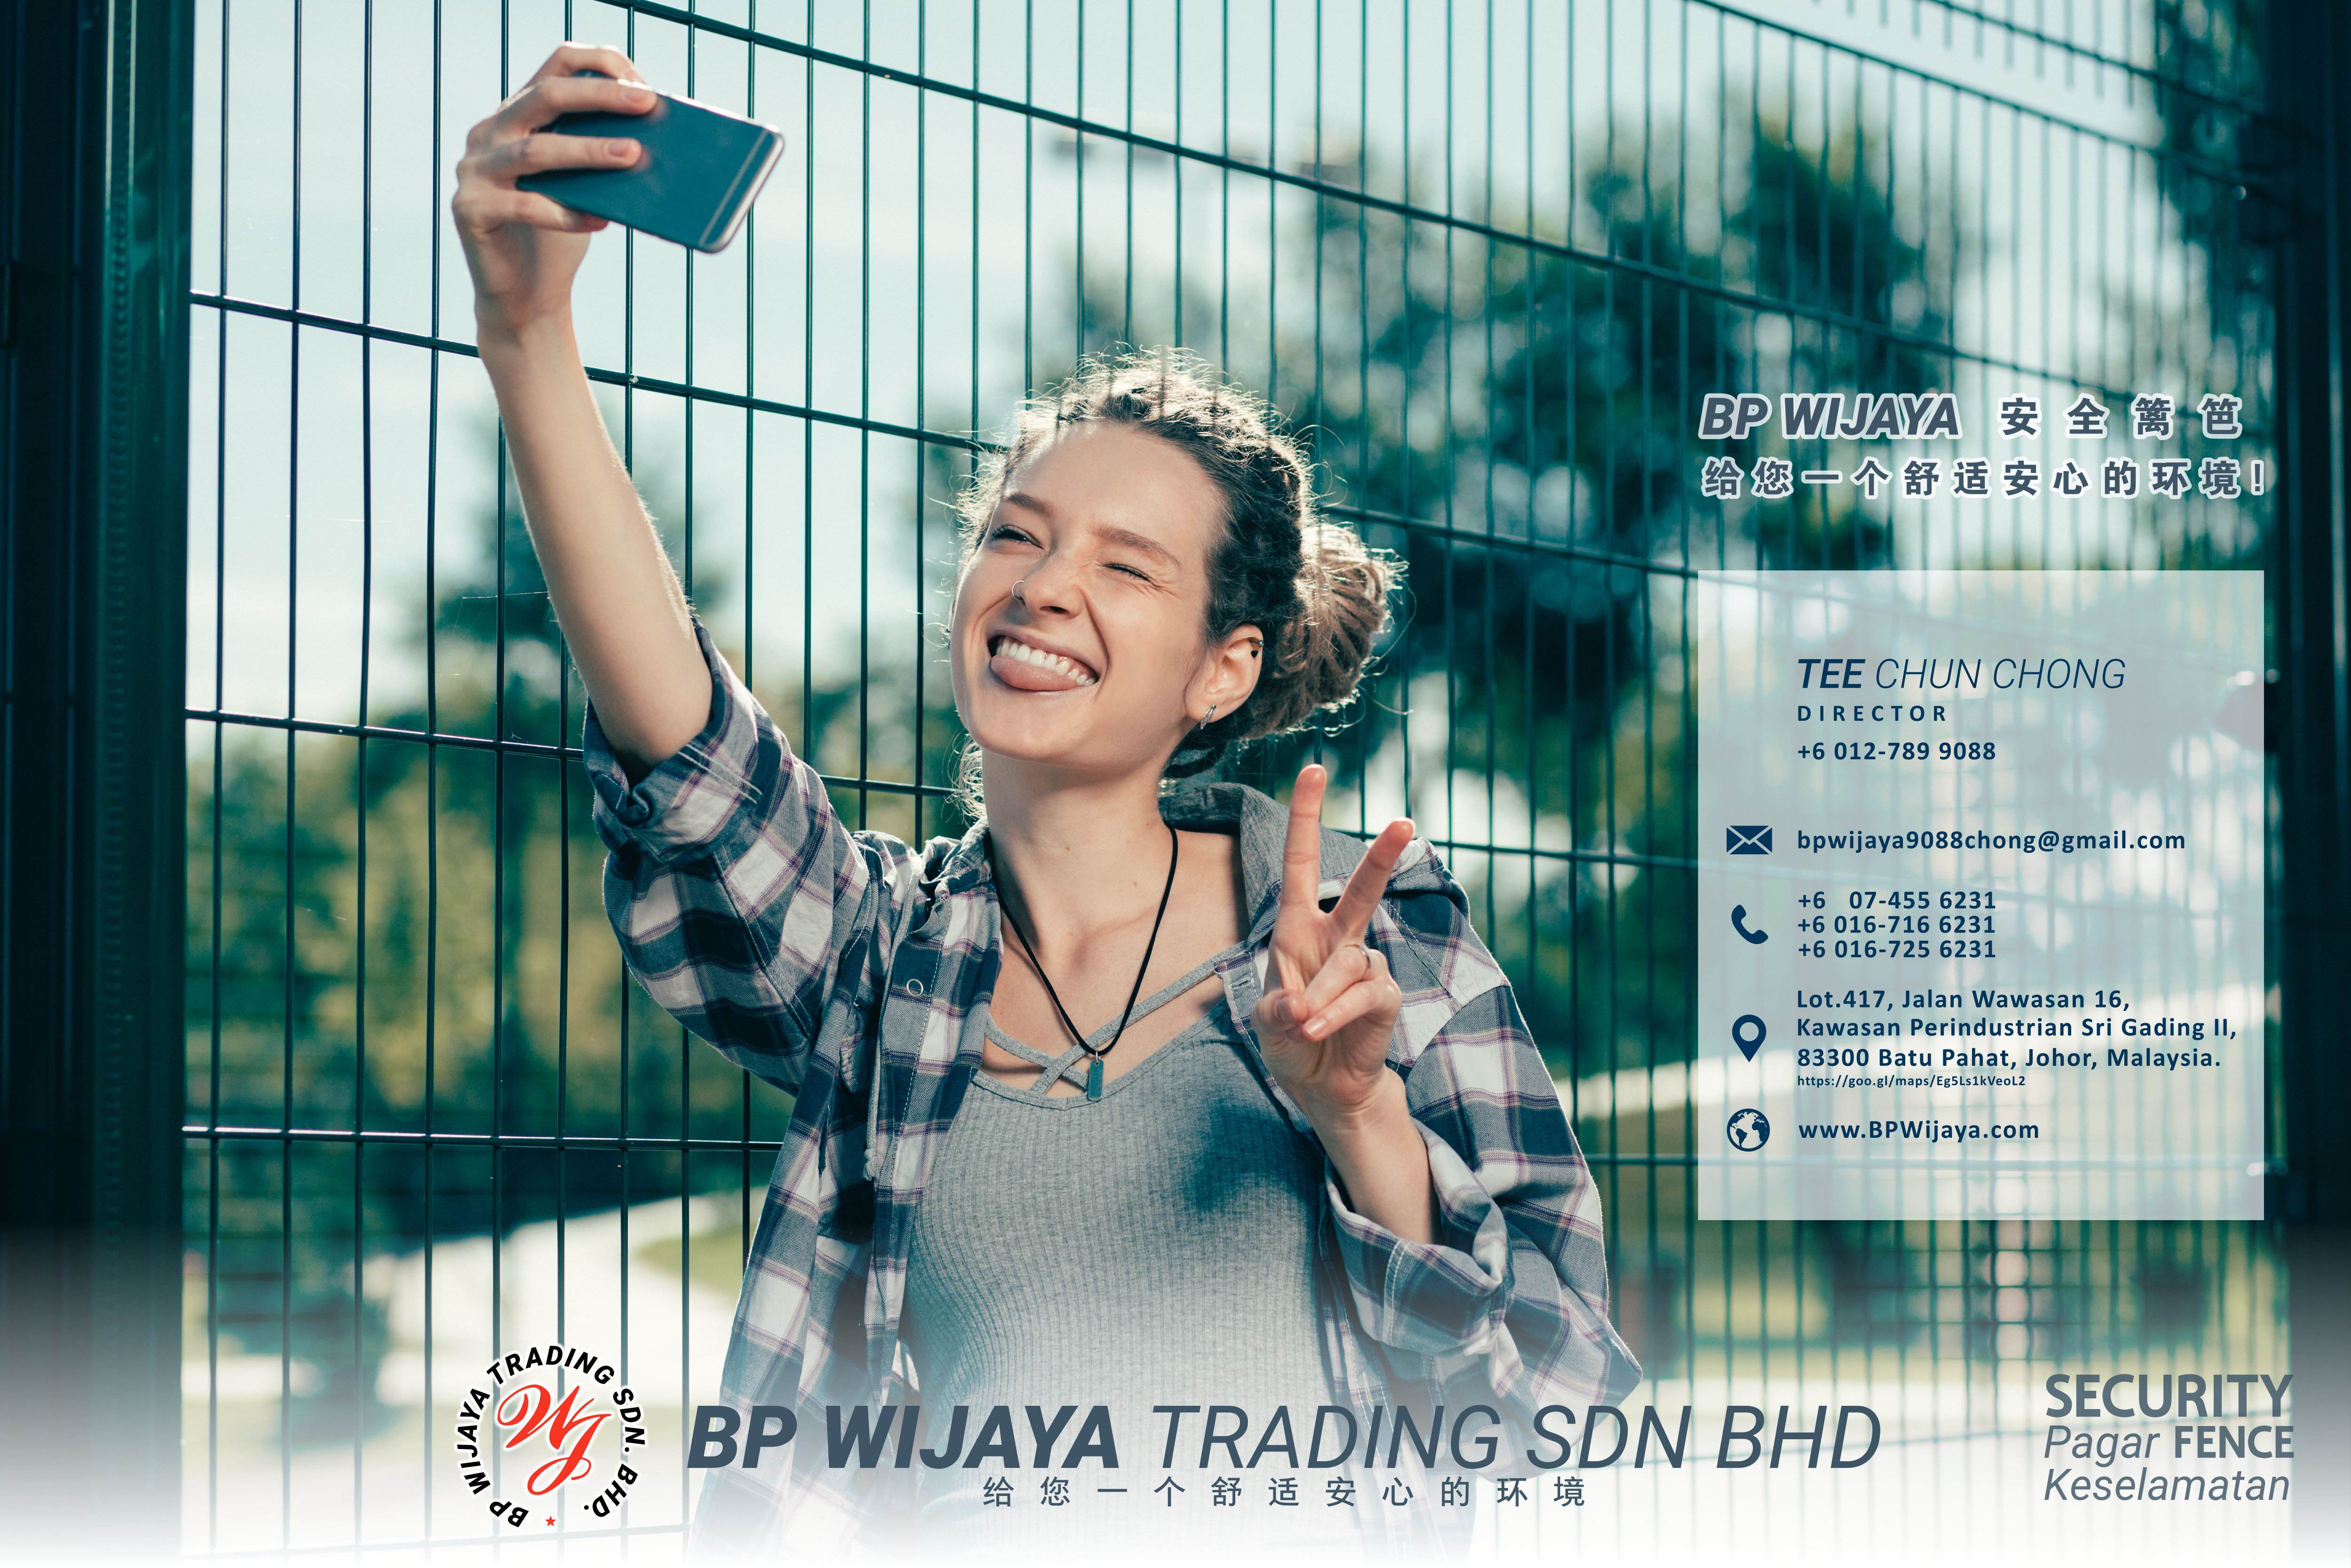 BP Wijaya Trading Sdn Bhd 马来西亚 雪州 雪兰莪 吉隆坡 安全篱笆制造商 住家围栏篱笆 提供 篱笆 建筑材料 给 发展商 花园 公寓 住家 工厂 农场 果园 社会 安全藩篱 建设 A01-09